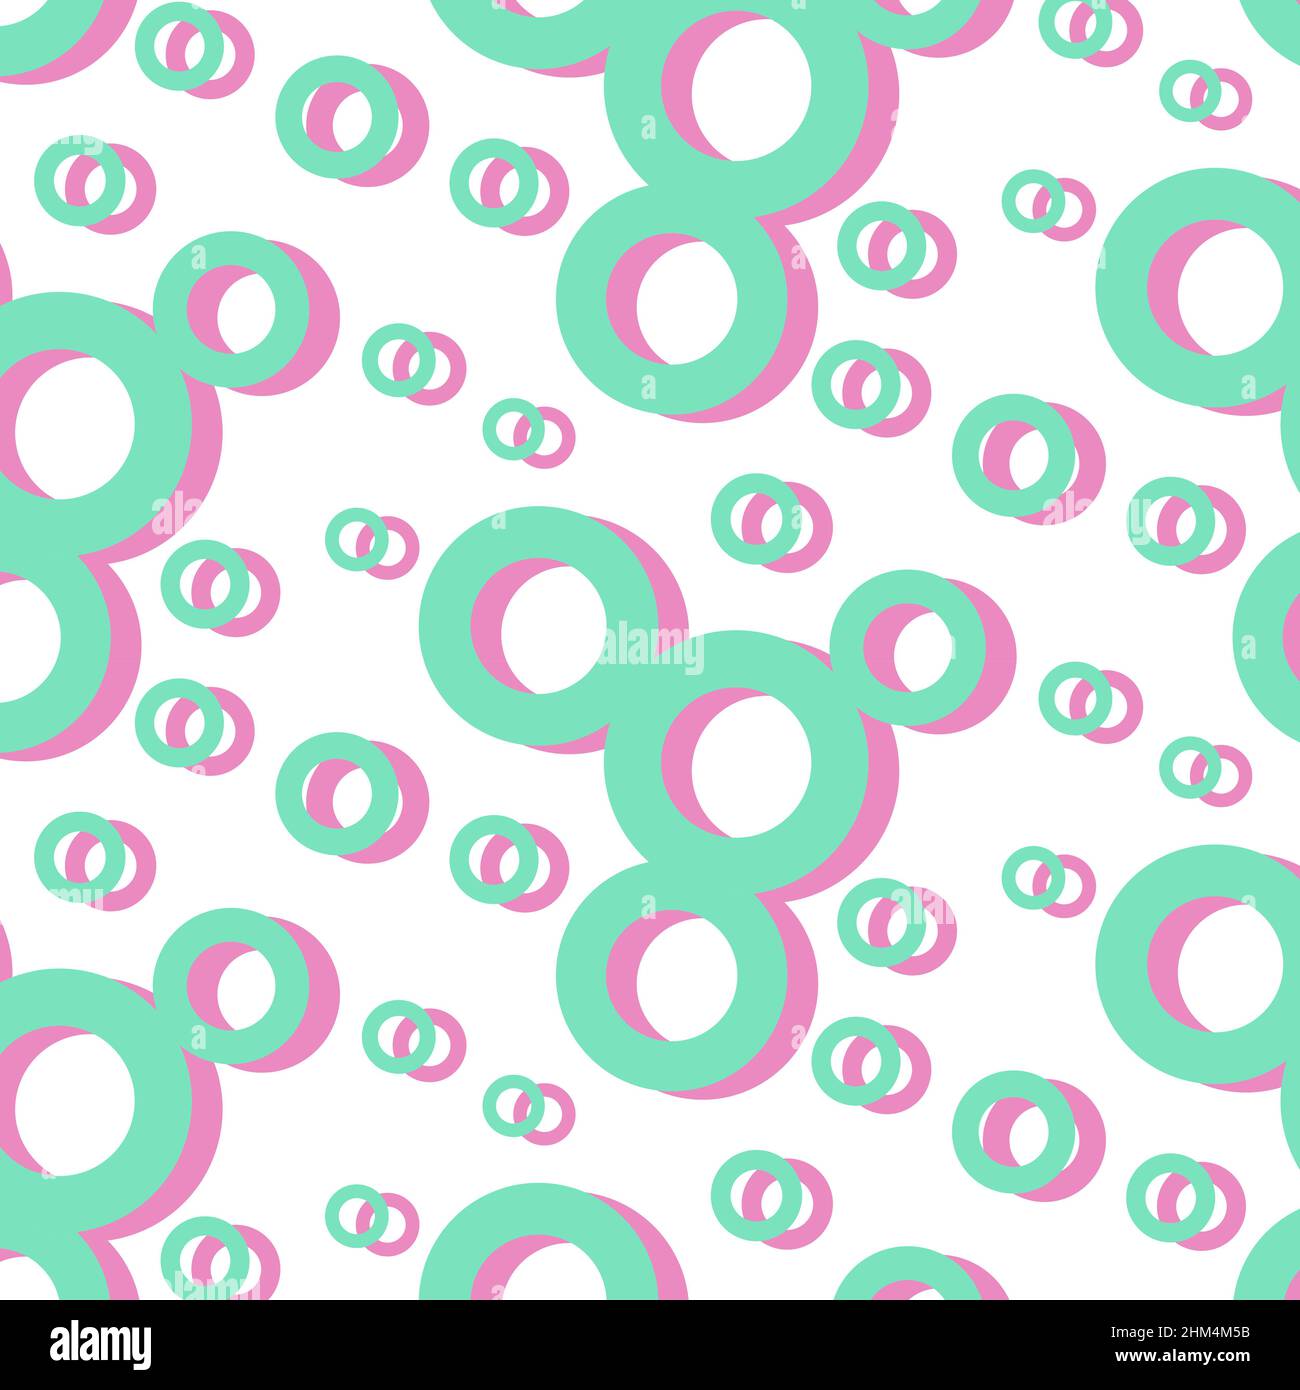 Nahtloses Muster aus einfachen geometrischen Formen in grünen und rosa Farbtönen. Abstrakte Hintergrundtextur. Design für Banner, Flyer, Booklet, Postkarte. Vektorgrafik. Stock Vektor